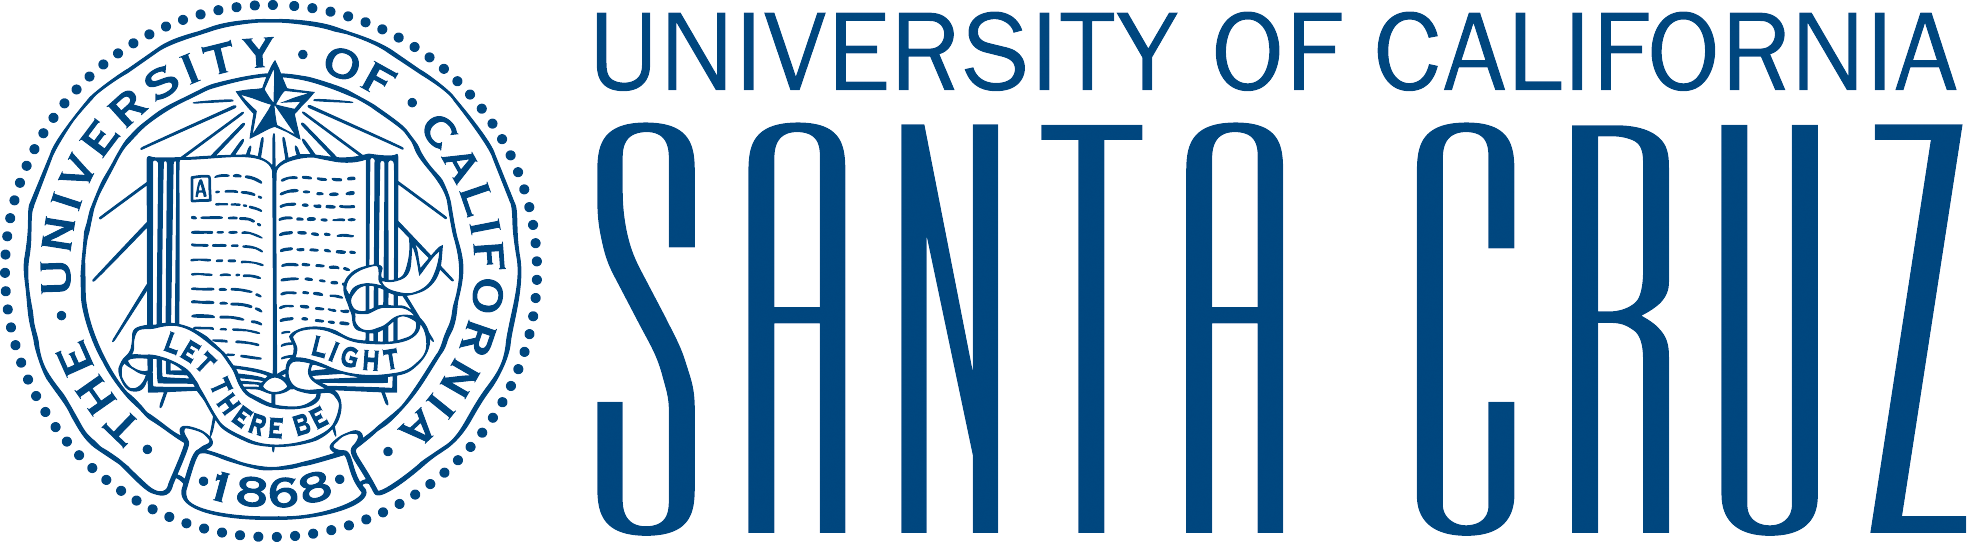 UC Santa Cruz – Post Order